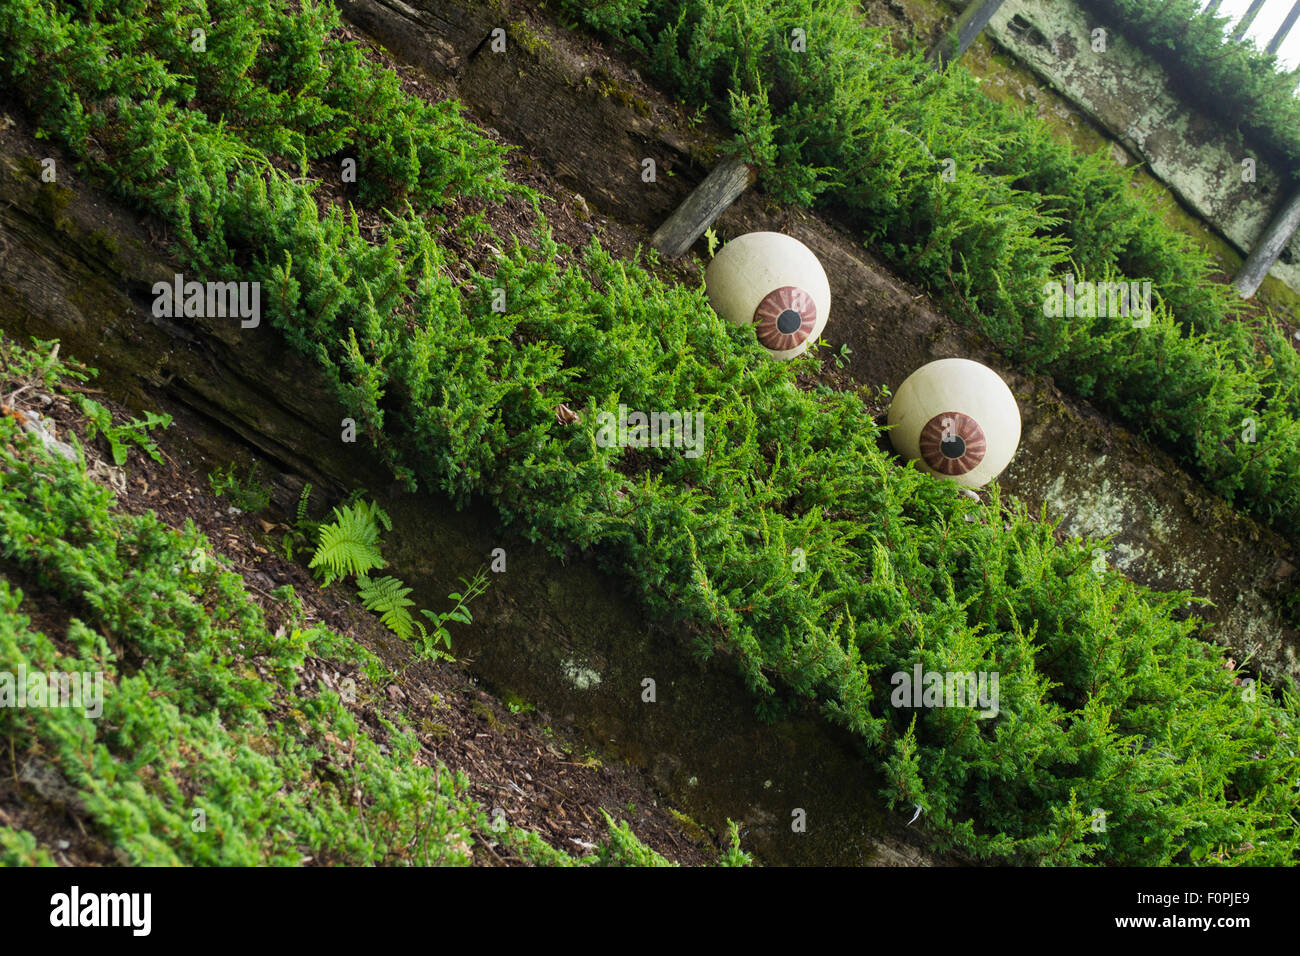 Dies ist ein Satz von zwei Augen, die als Dekoration im Blarney Garten in Irland platziert werden. Stockfoto